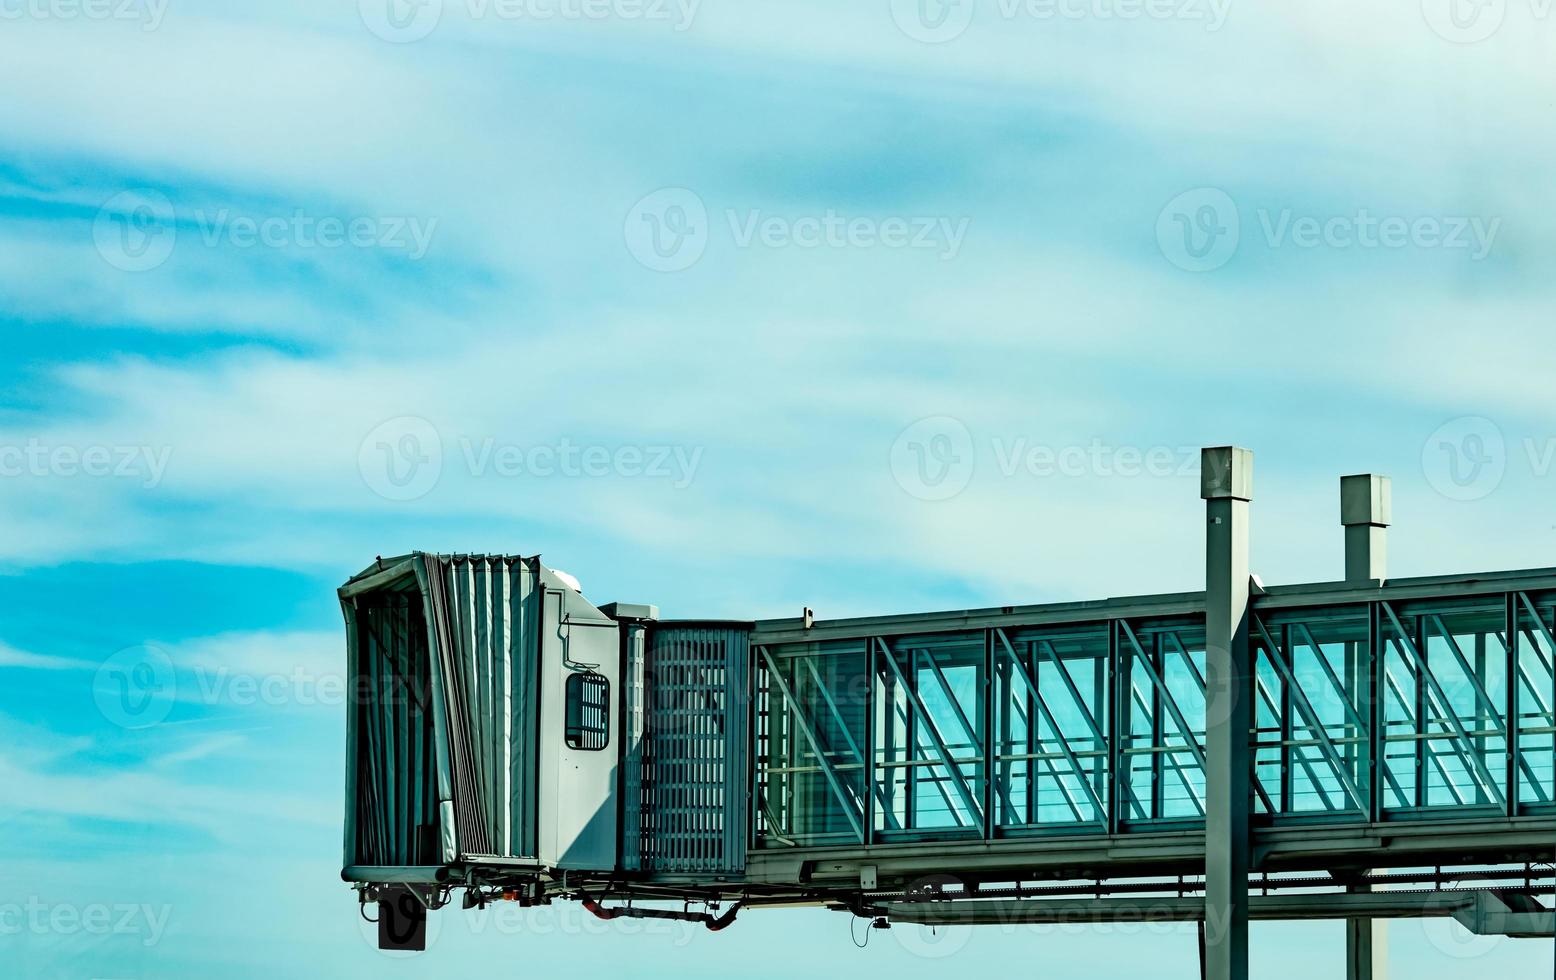 Jet-Brücke nach dem Start der kommerziellen Fluggesellschaft am Flughafen gegen blauen Himmel und weiße Wolken. Fluggastbrücke angedockt. abflug der internationalen fluggesellschaft. leere Fluggastbrücke. foto